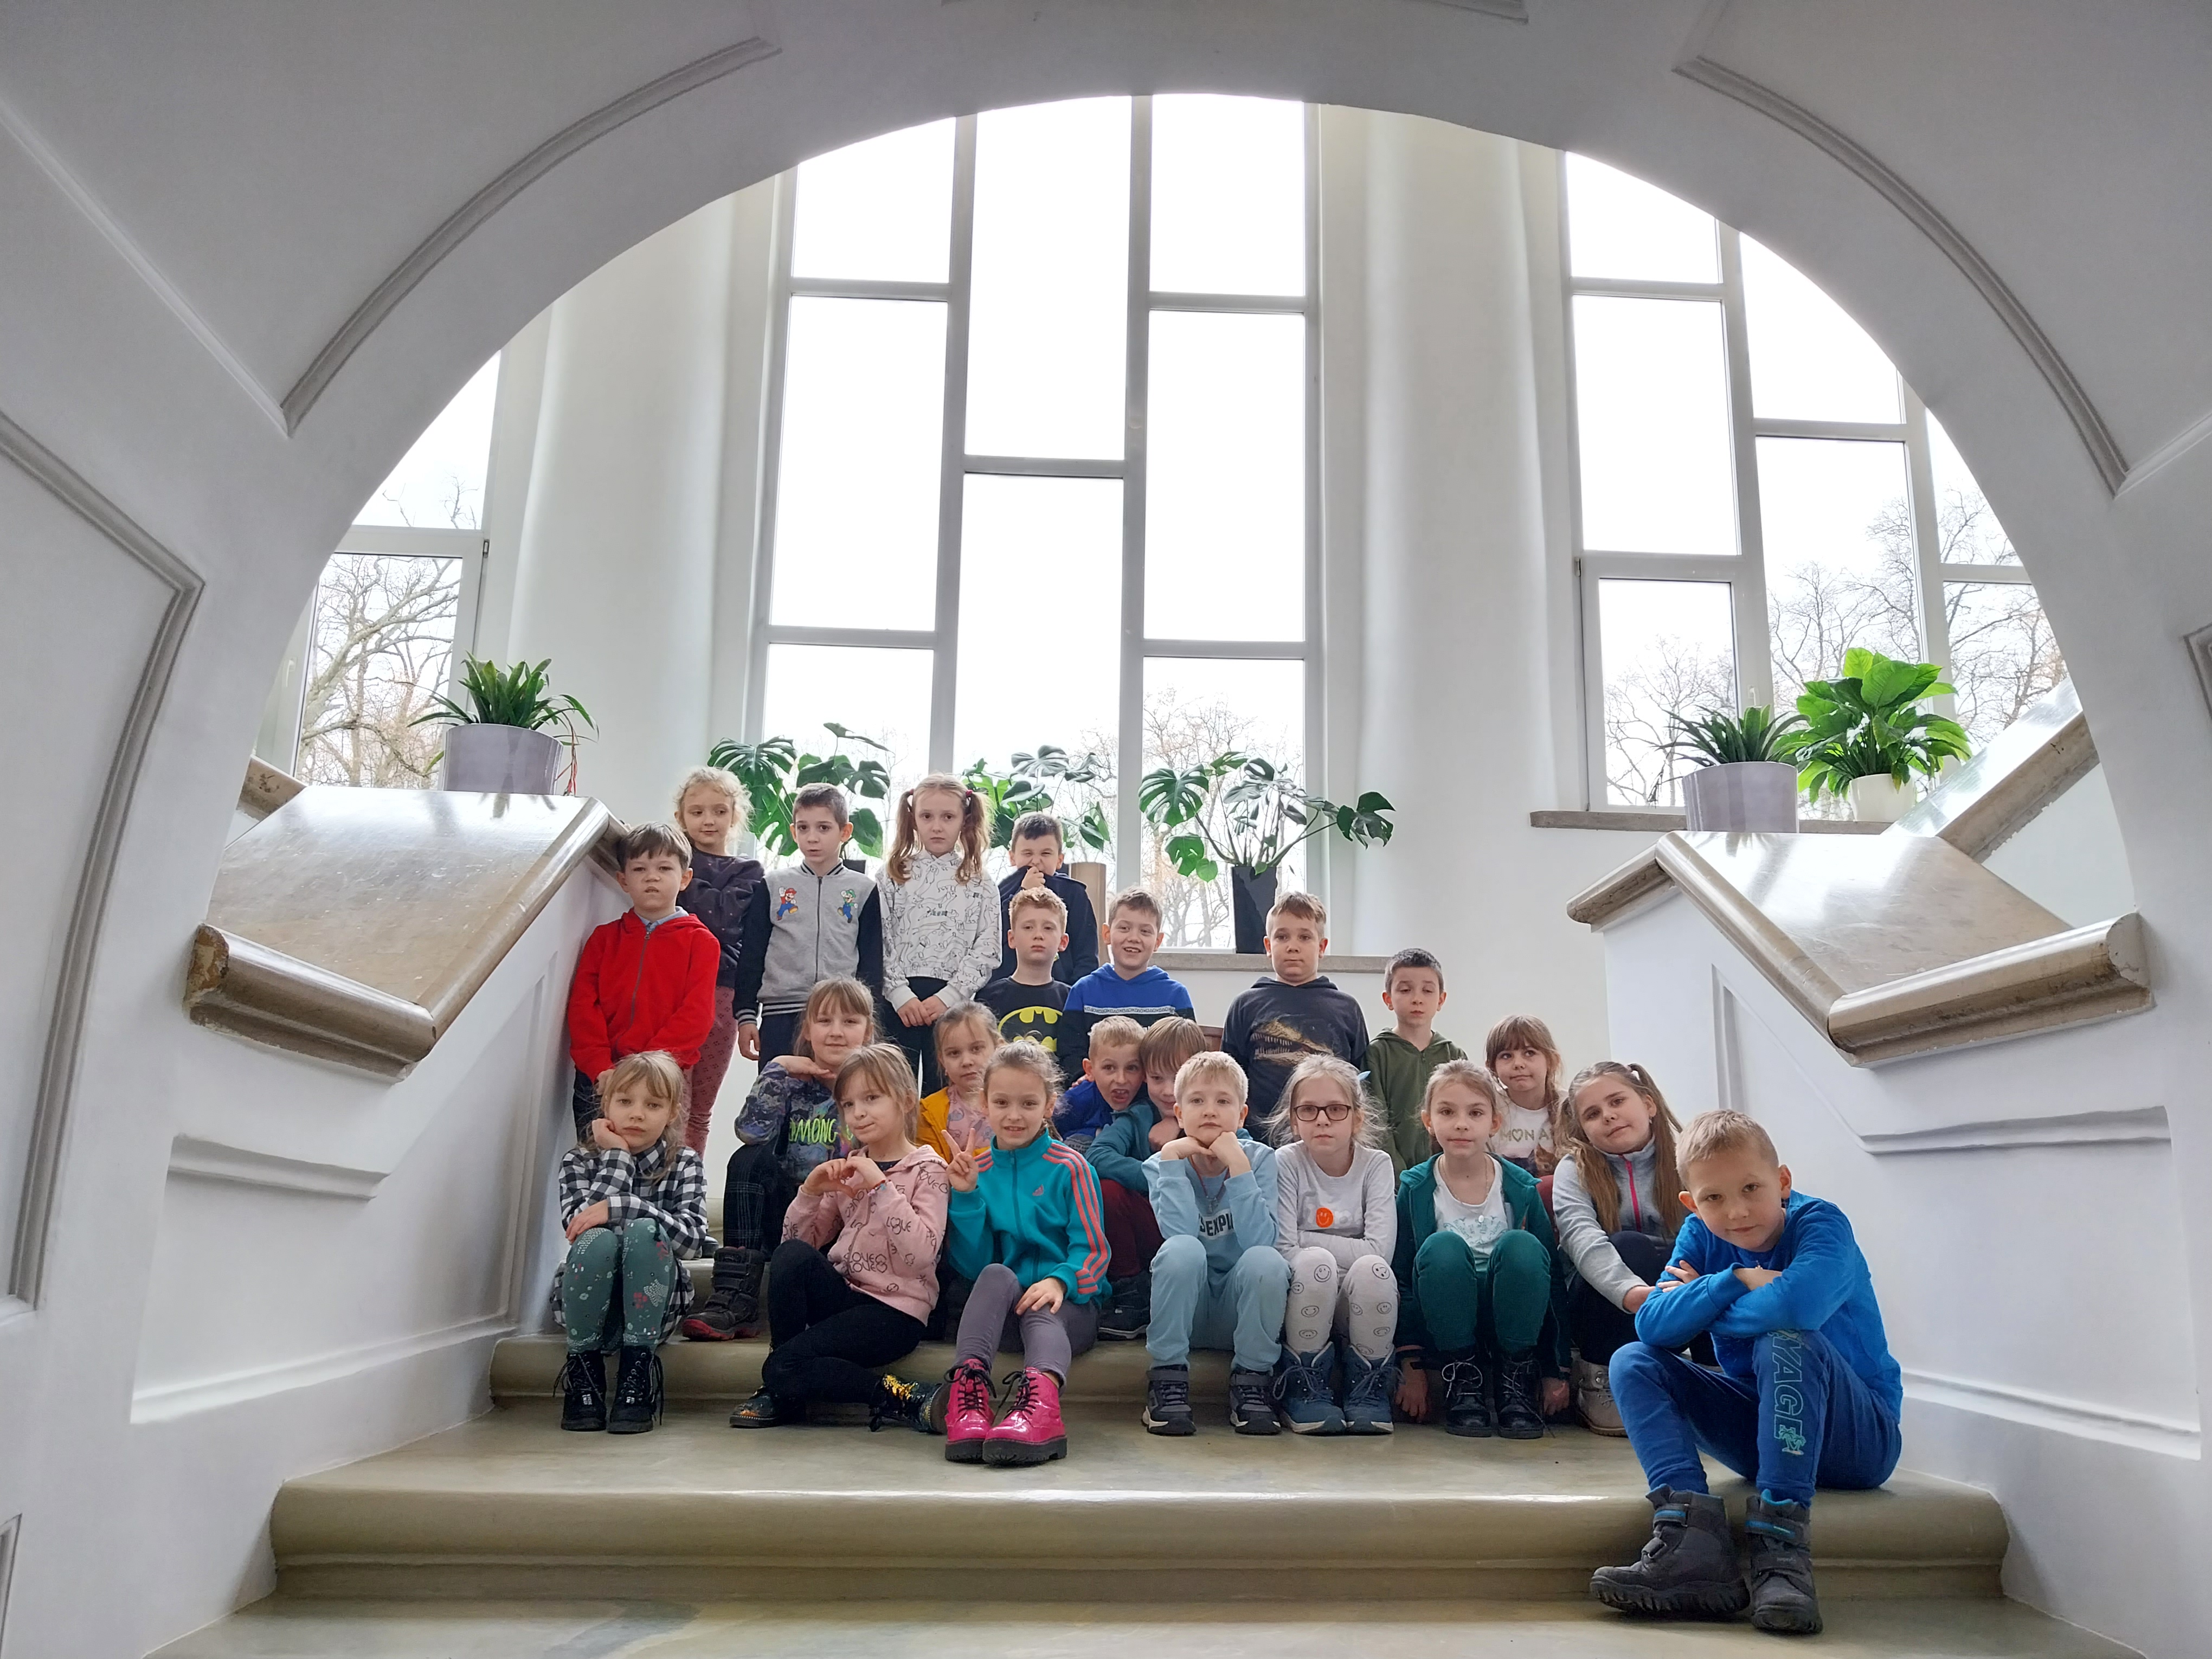 Zdjęcie grupowe – dzieci na schodach pałacu